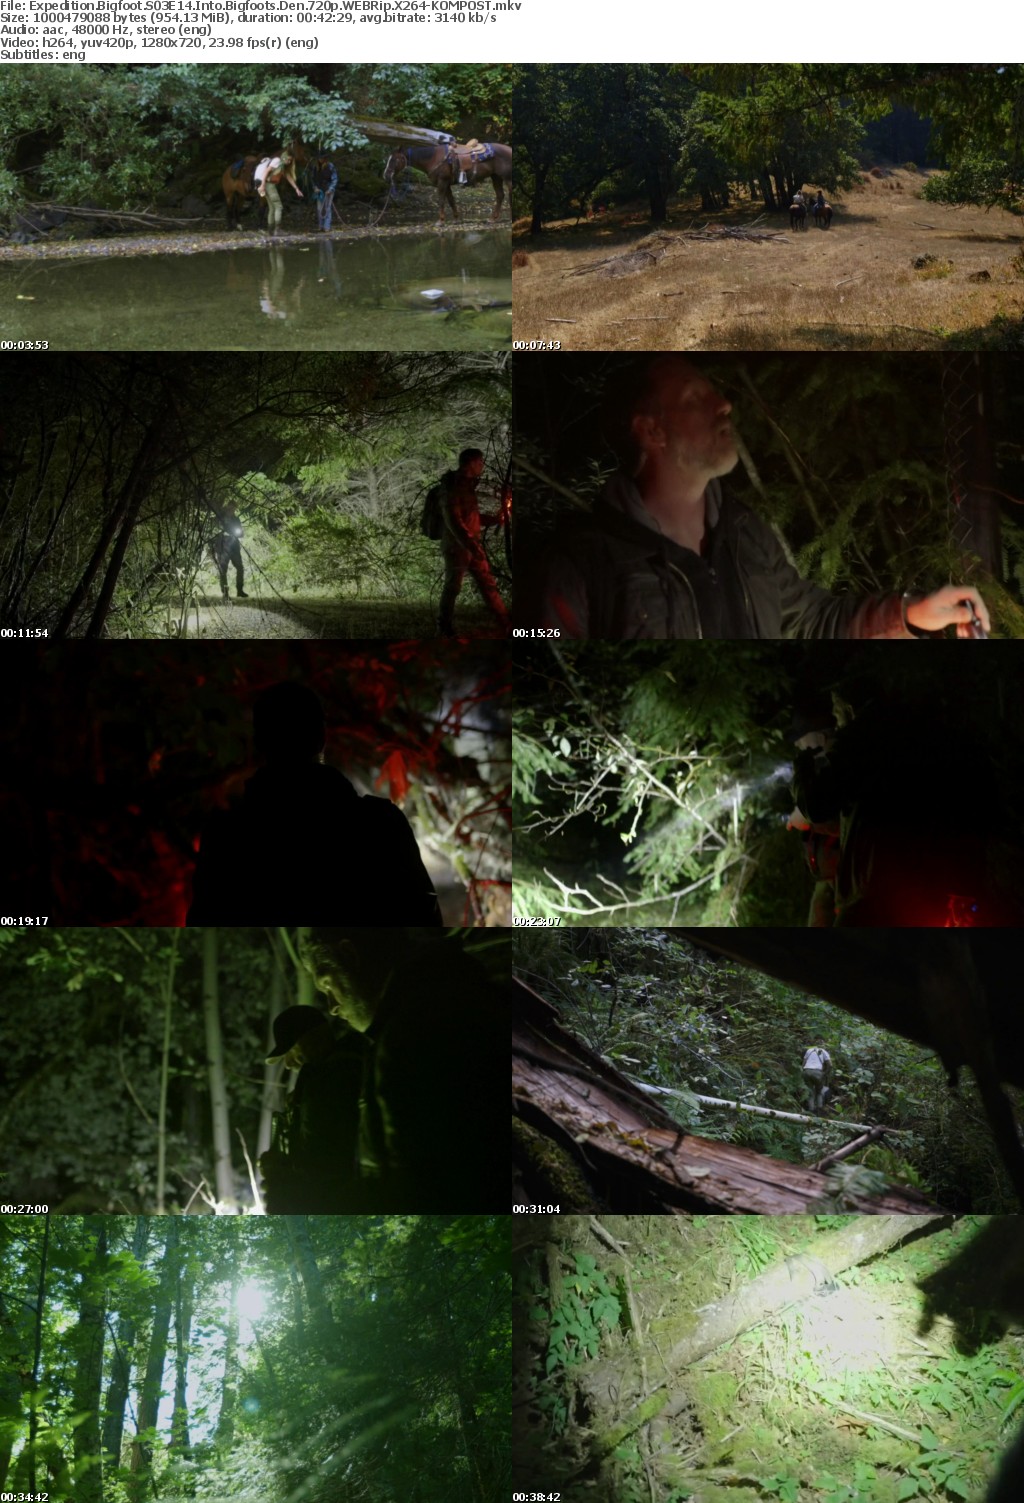 Expedition Bigfoot S03E14 Into Bigfoots Den 720p WEBRip X264-KOMPOST